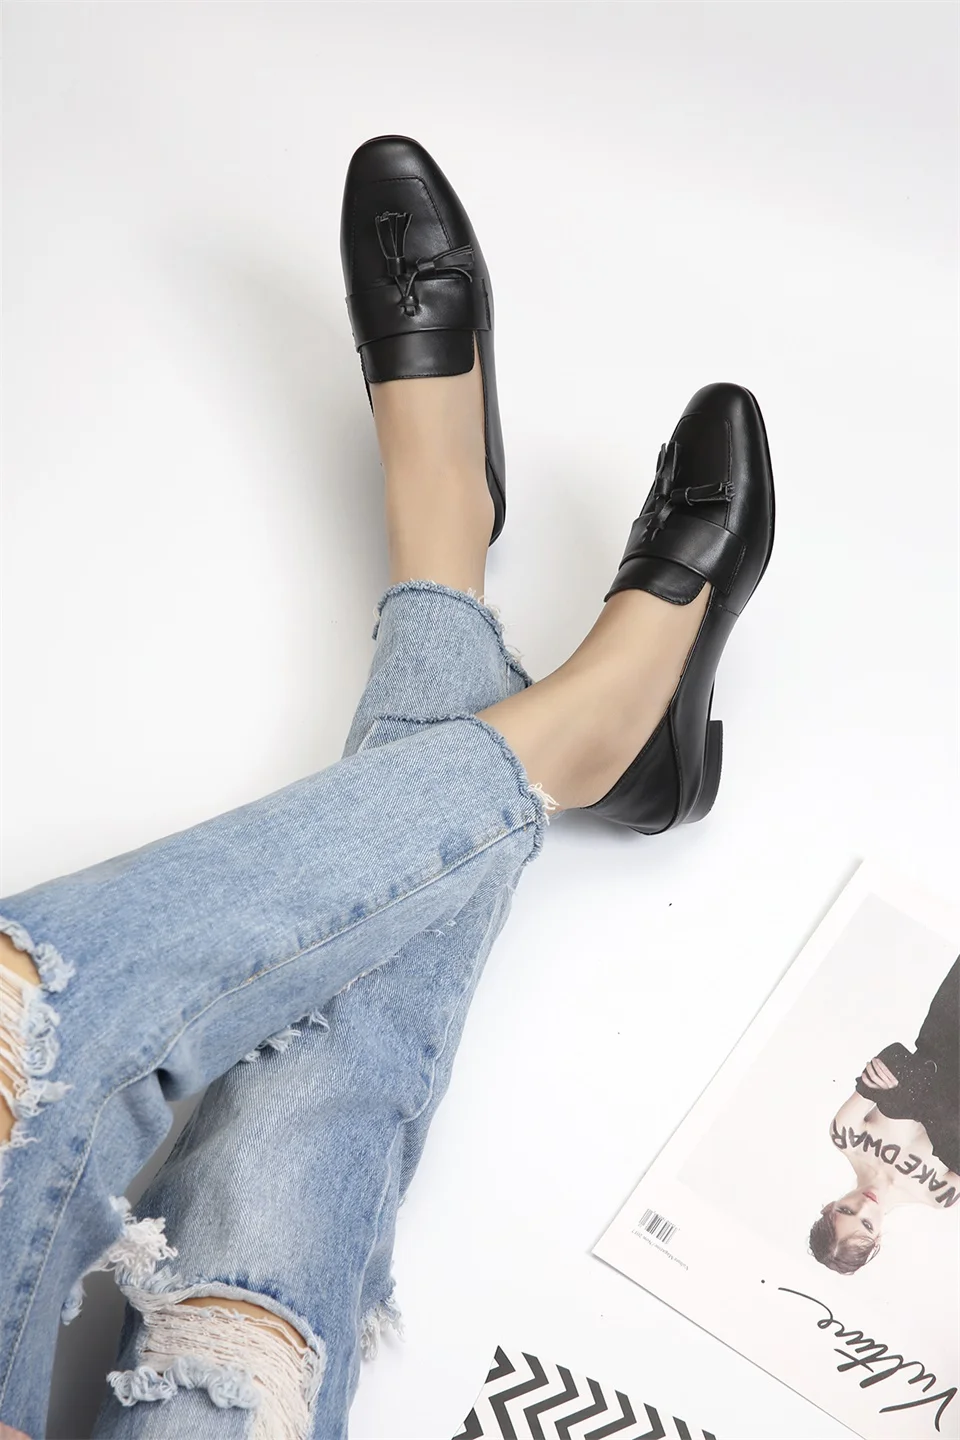 Г. весенне-Летняя женская обувь удобная кожаная тканевая модная женская обувь с декоративным квадратным носком на каблуке 2 см размер 33-42